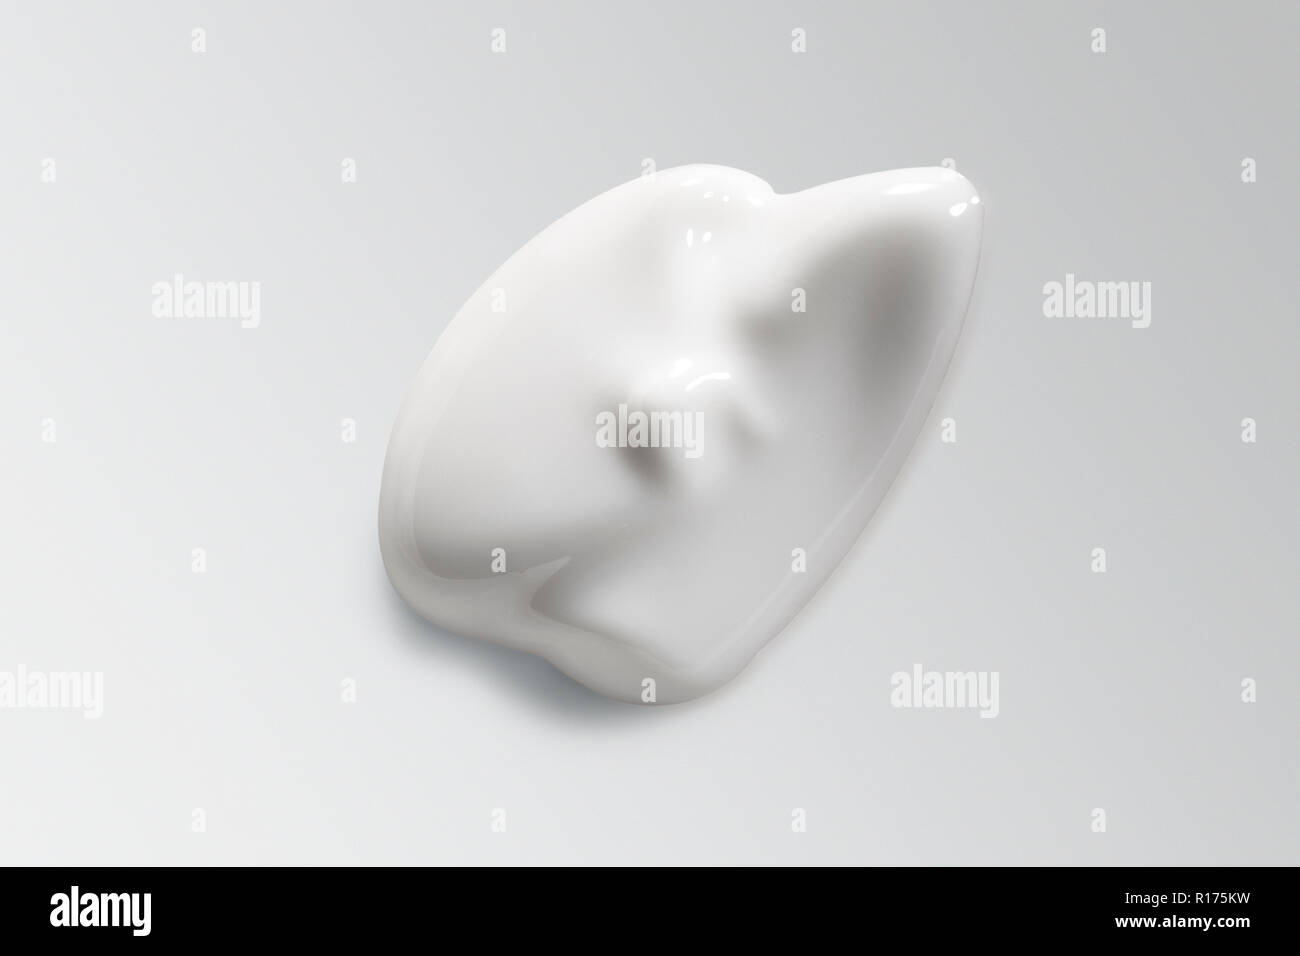 Irregular shaped mound of cosmetic cream on white background Stock Photo